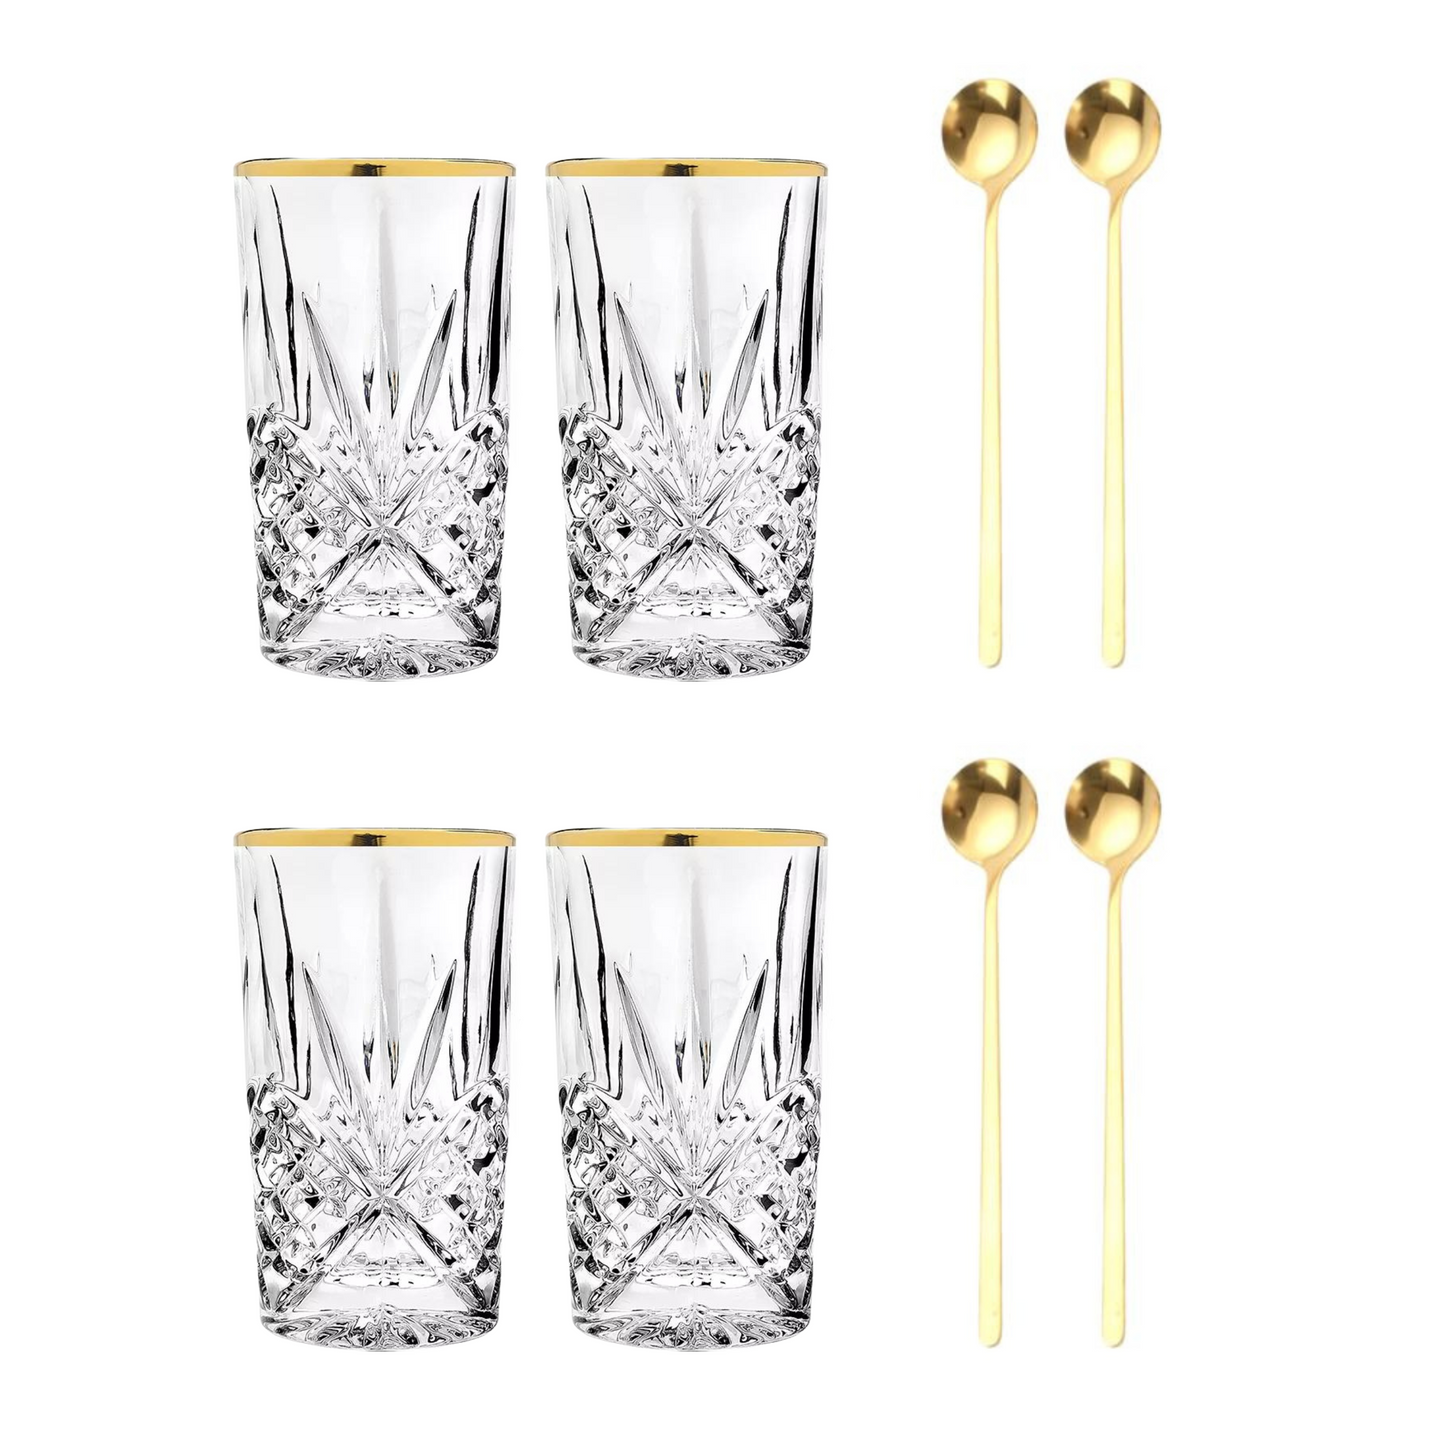 Set Luxus Kristall Latte Macchiato Gläser mit Goldrand 350ml Trinkgläser 4er Set "Star" mit goldenen Latte Macchiato Löffeln